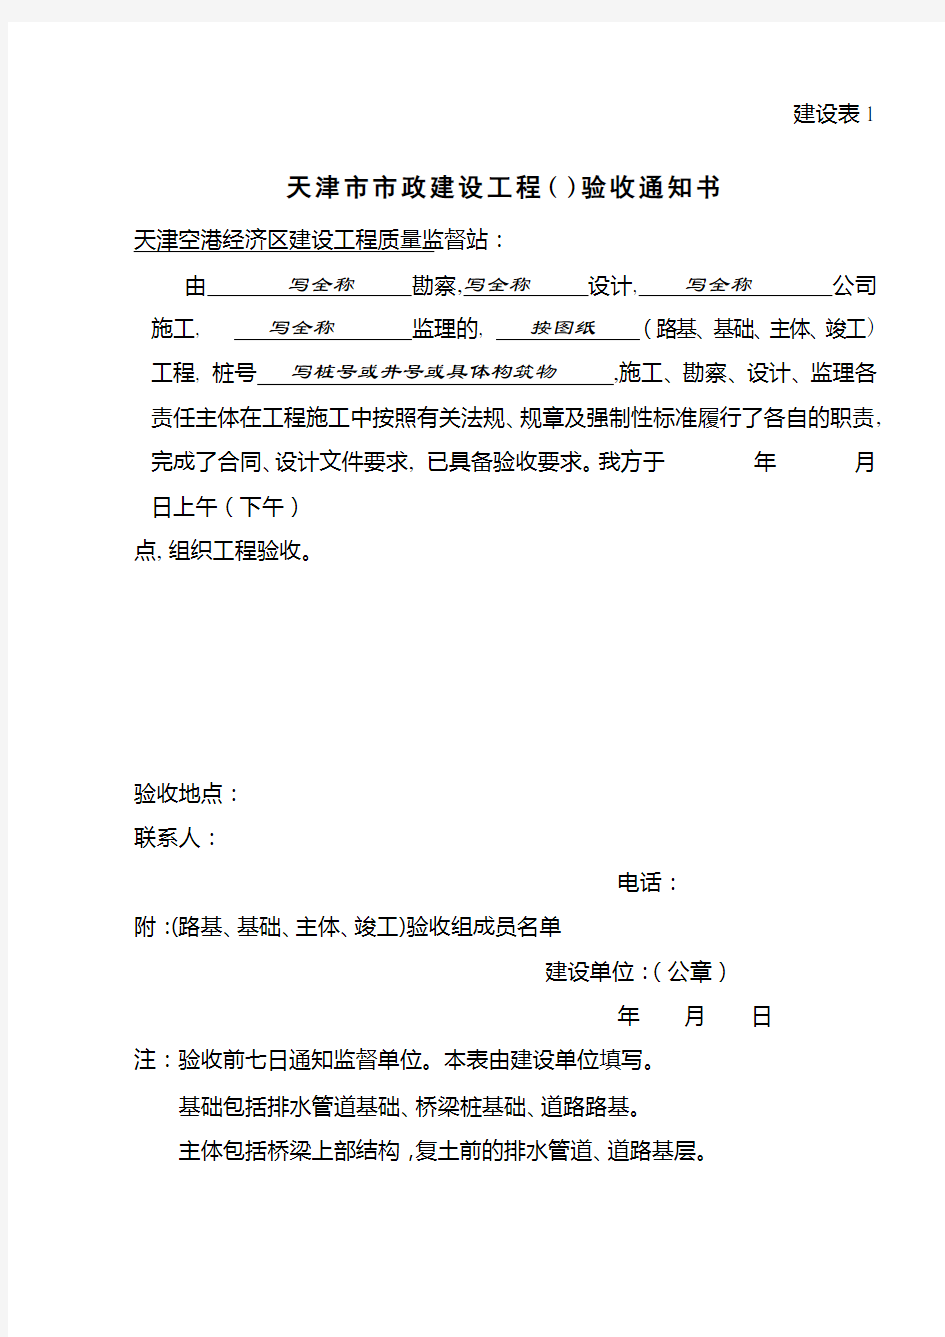 天津市竣工验收备案全套表格(建设表1-7)剖析